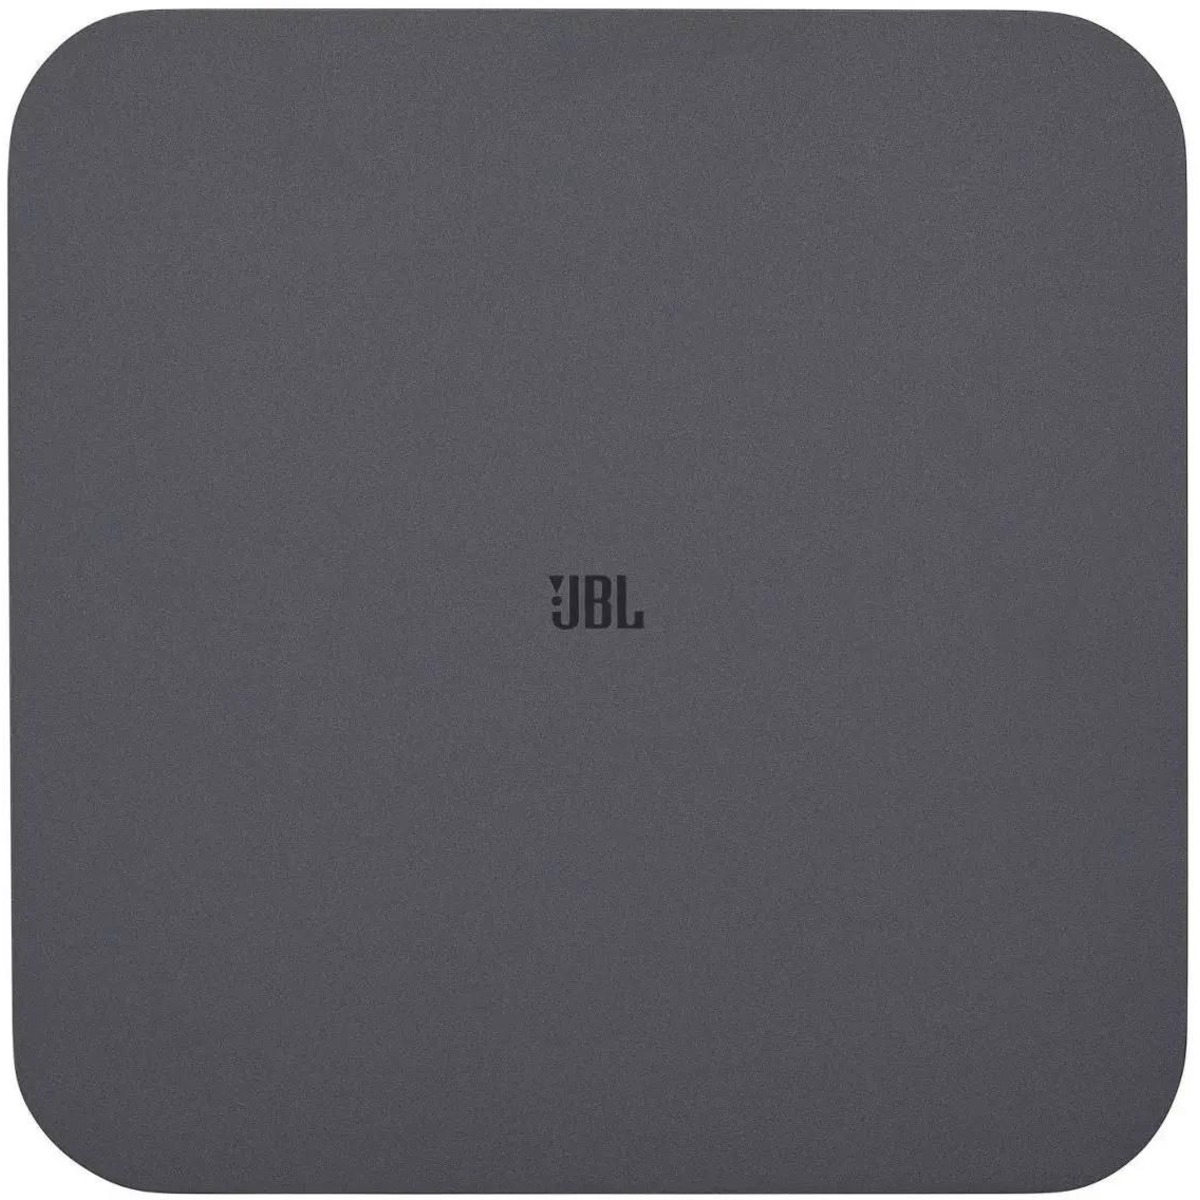 Саундбар JBL BAR500 PRO-5.1 5.1 (Цвет: Black)